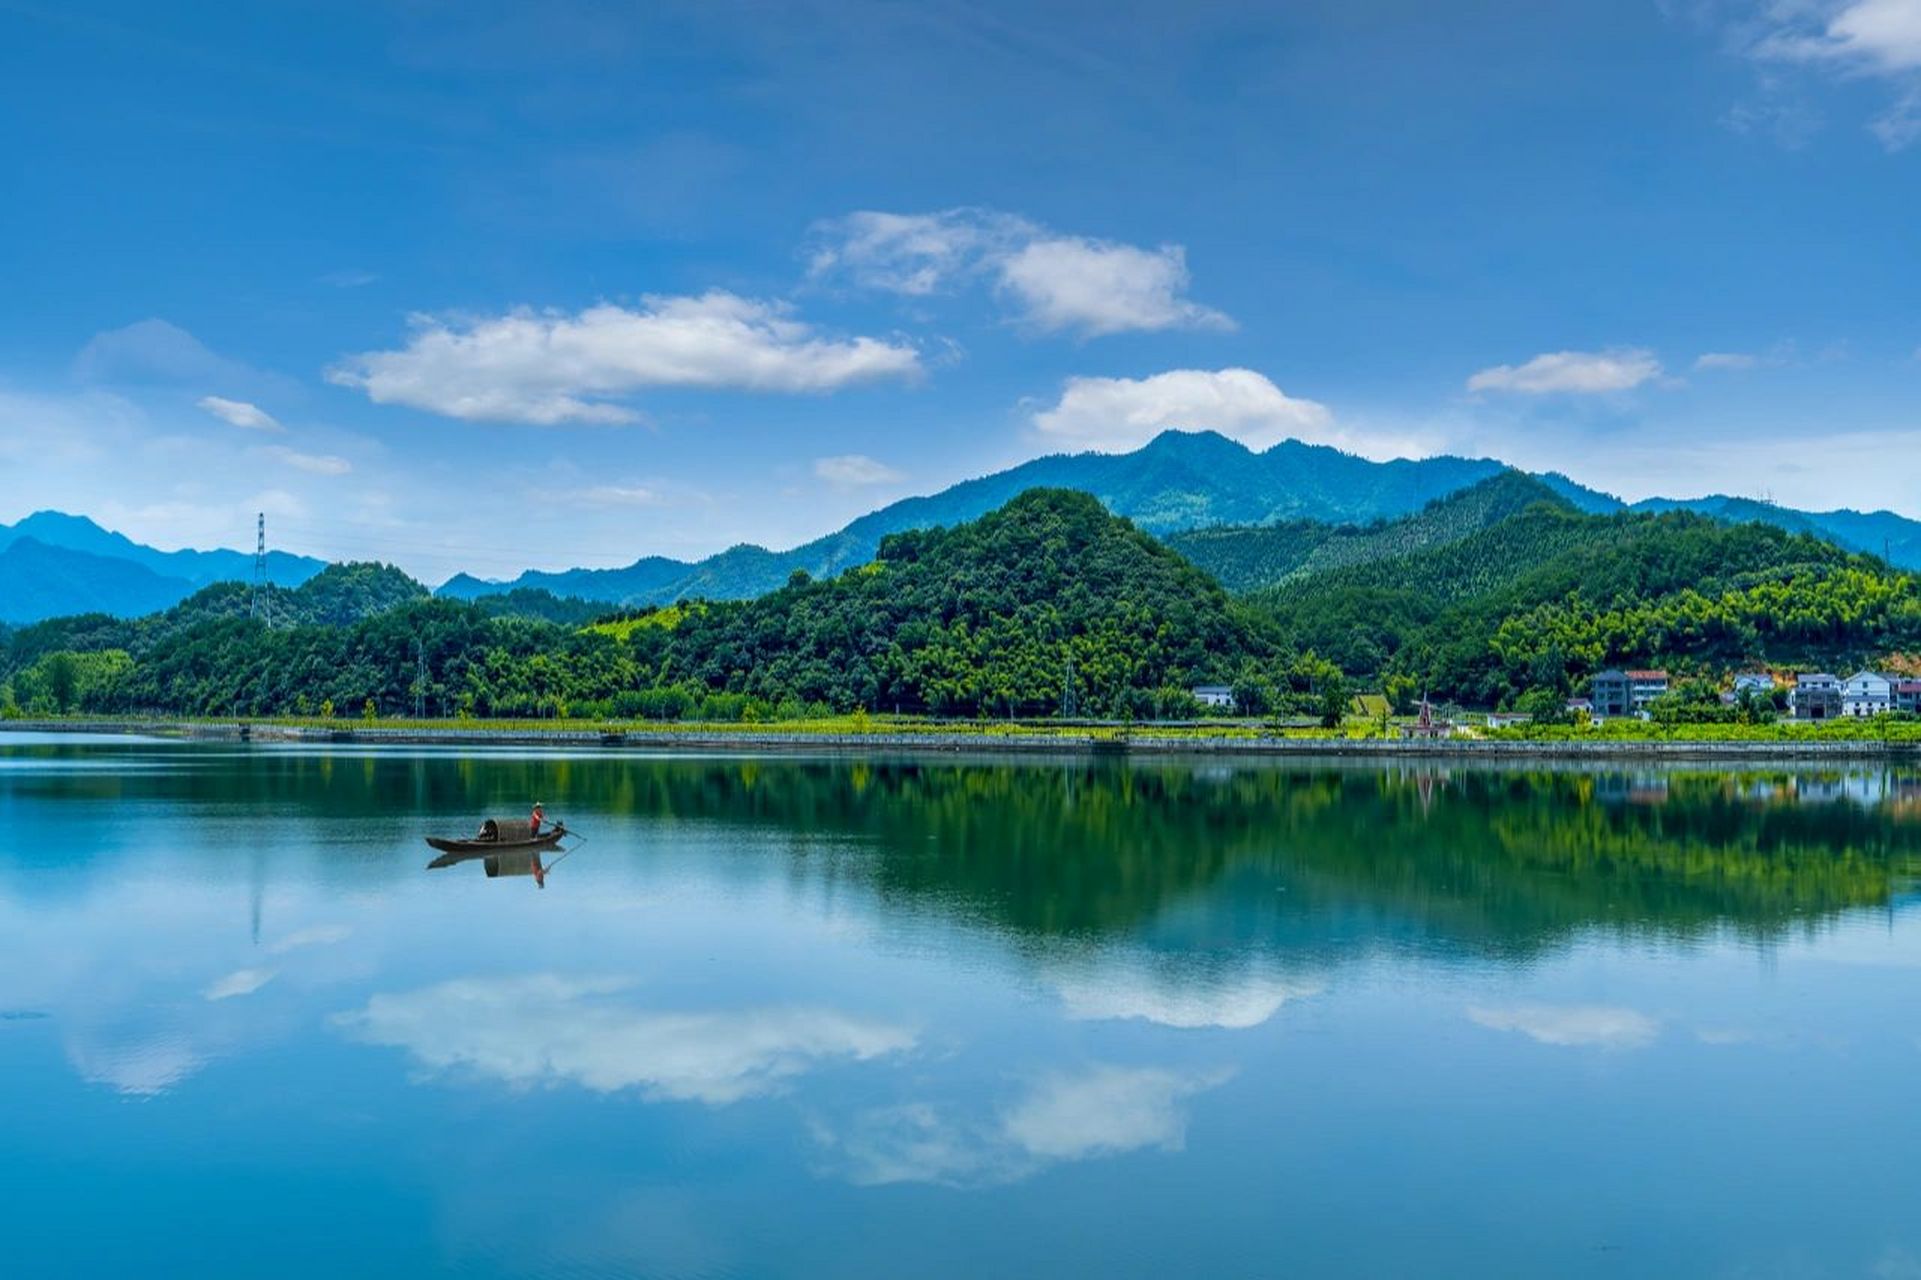 千岛湖Ⅱ岛屿介绍 千岛湖(新安江水库),国家aaaaa级景区,位于浙江省